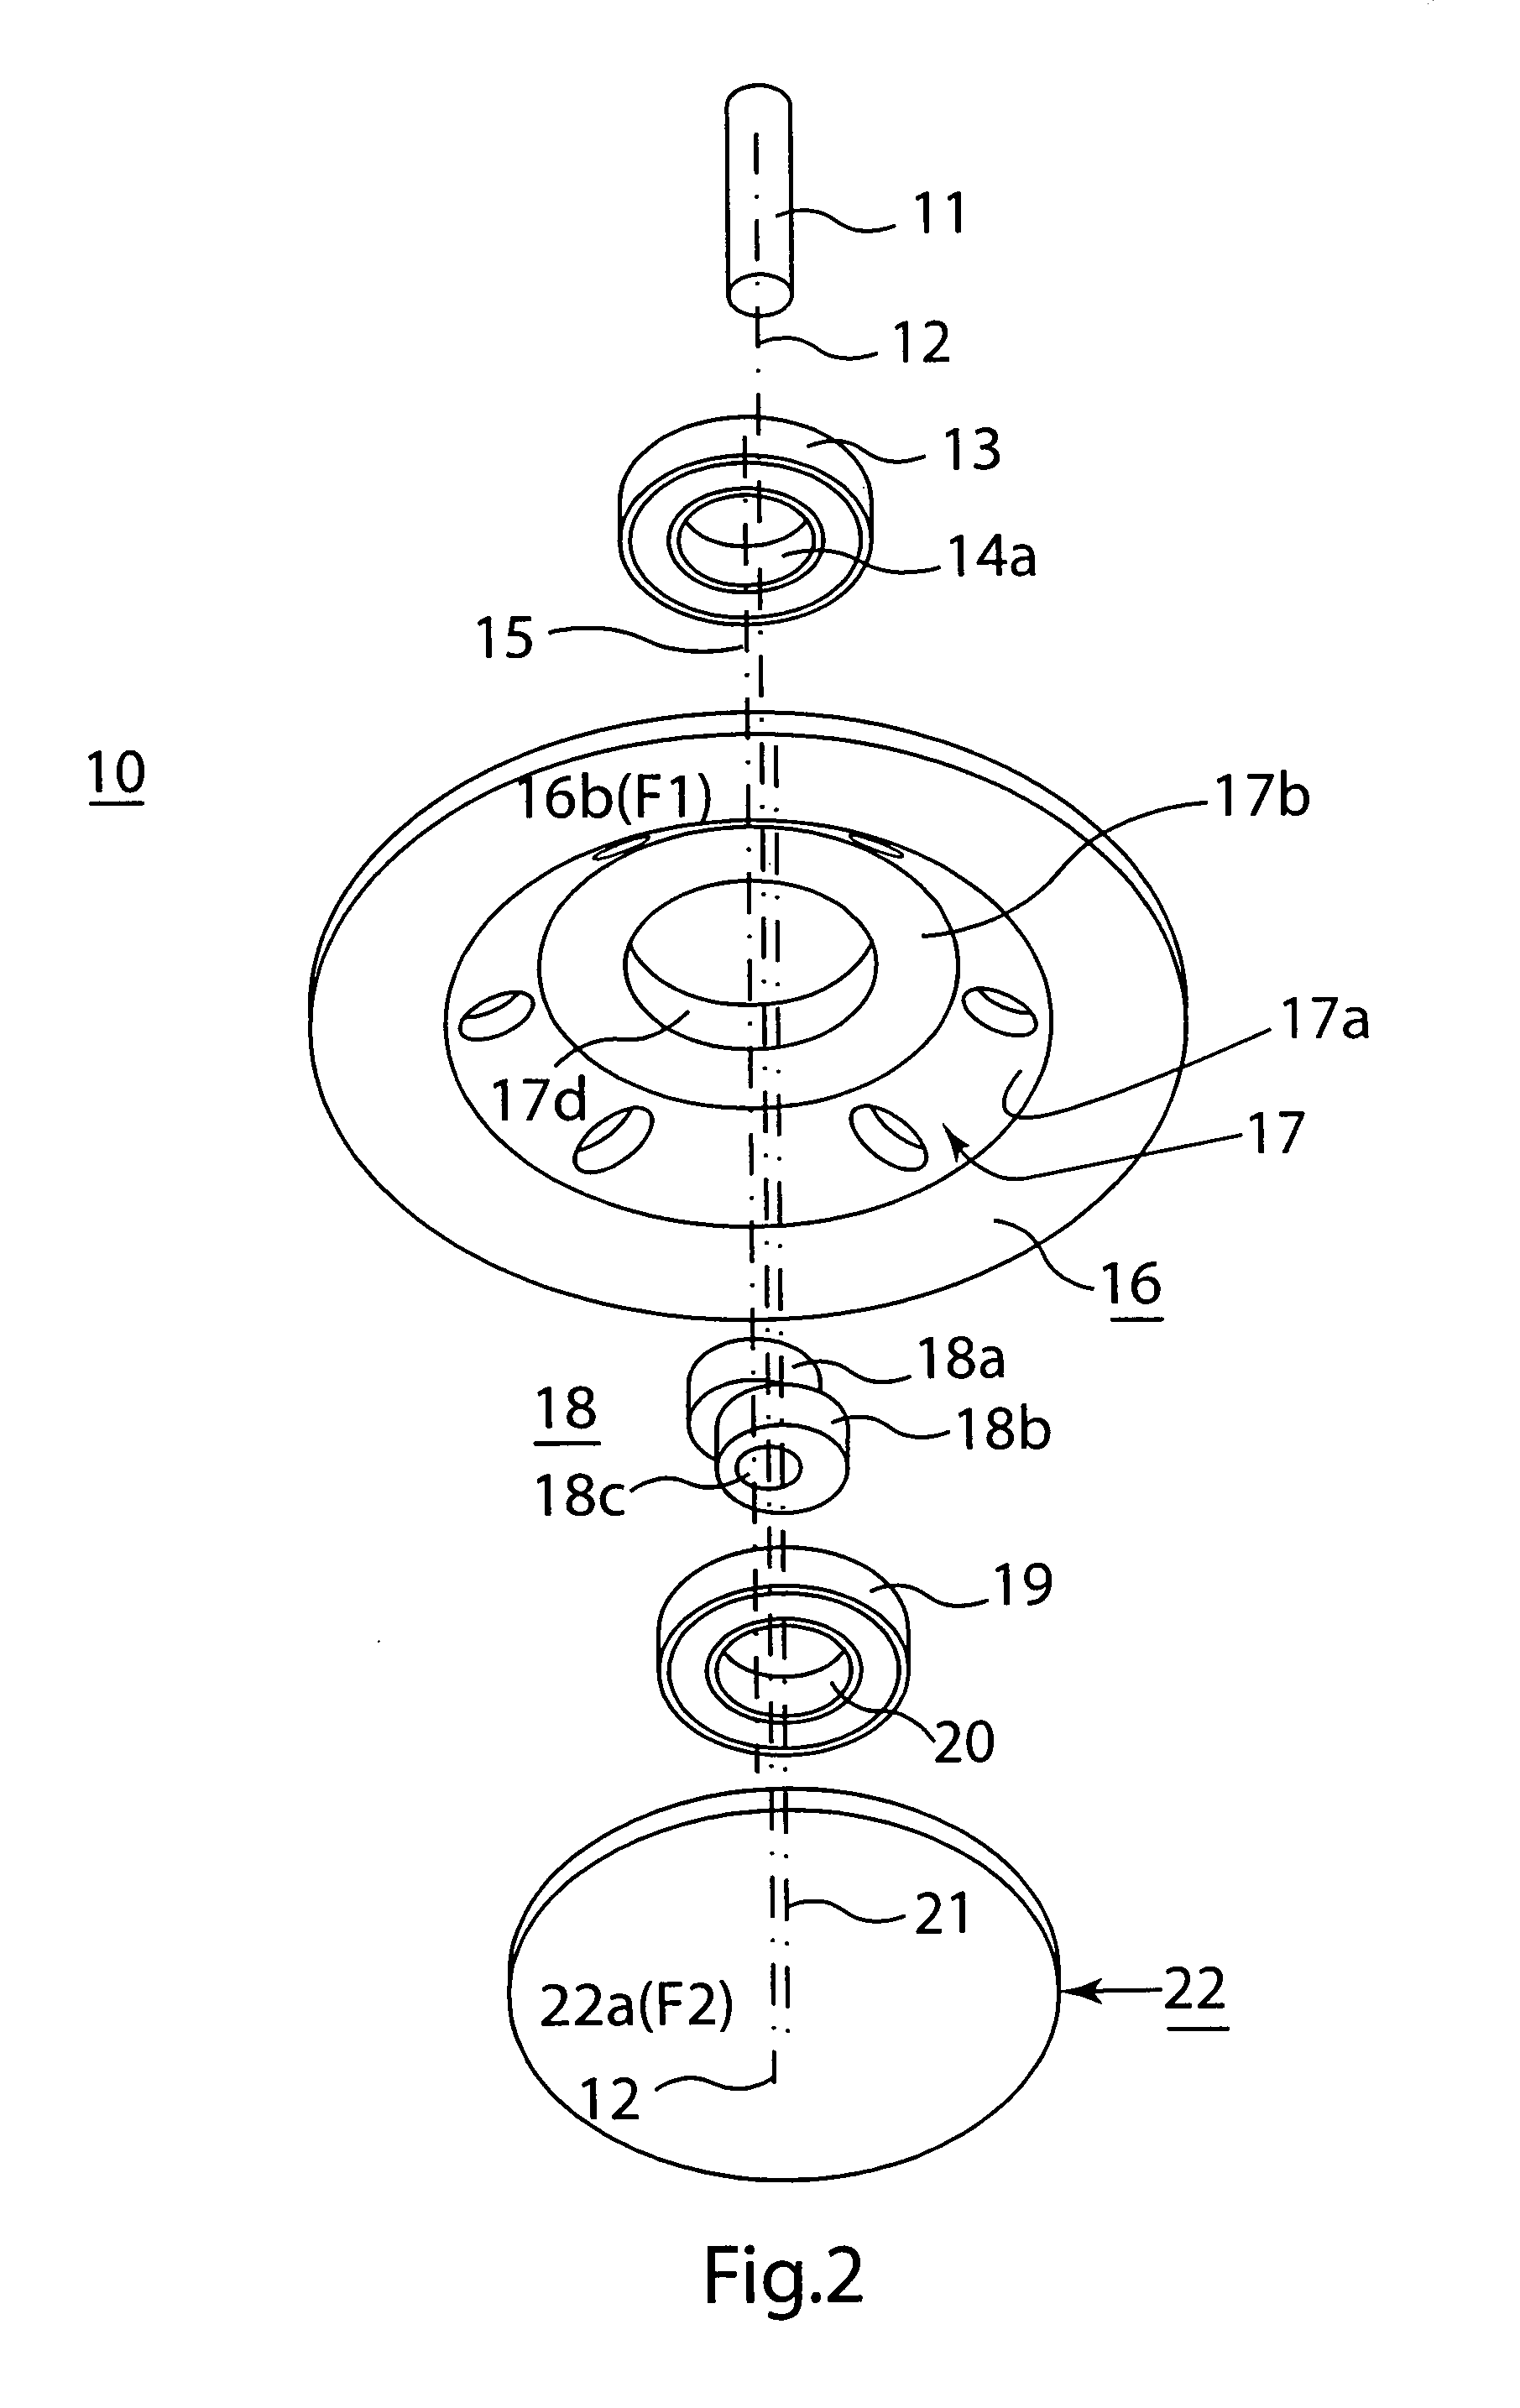 Anti-vibration arrangement